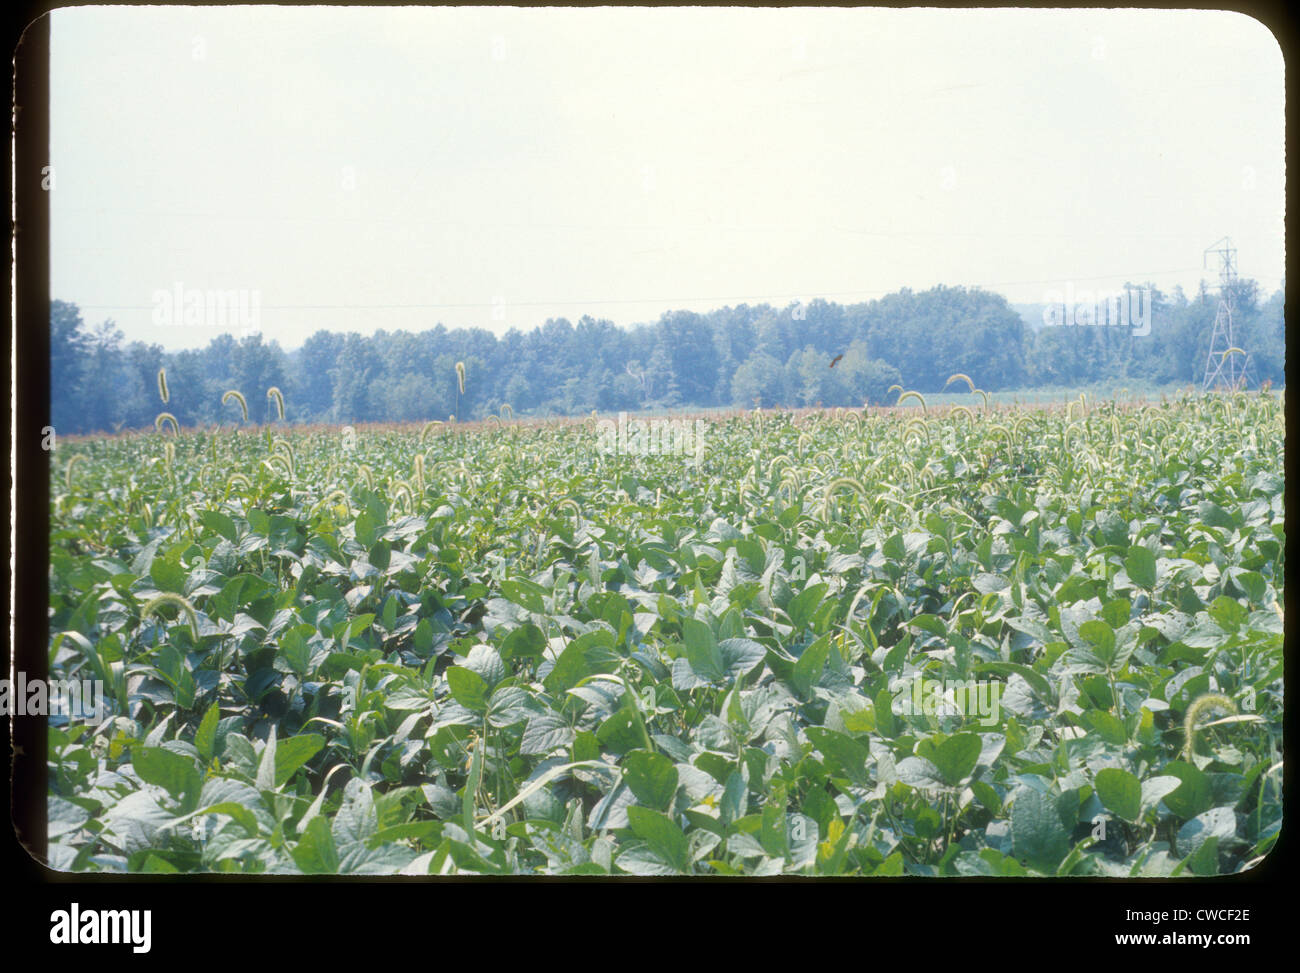 Soja illinois domaine 1960 Agriculture agriculture paysage américain du midwest Banque D'Images